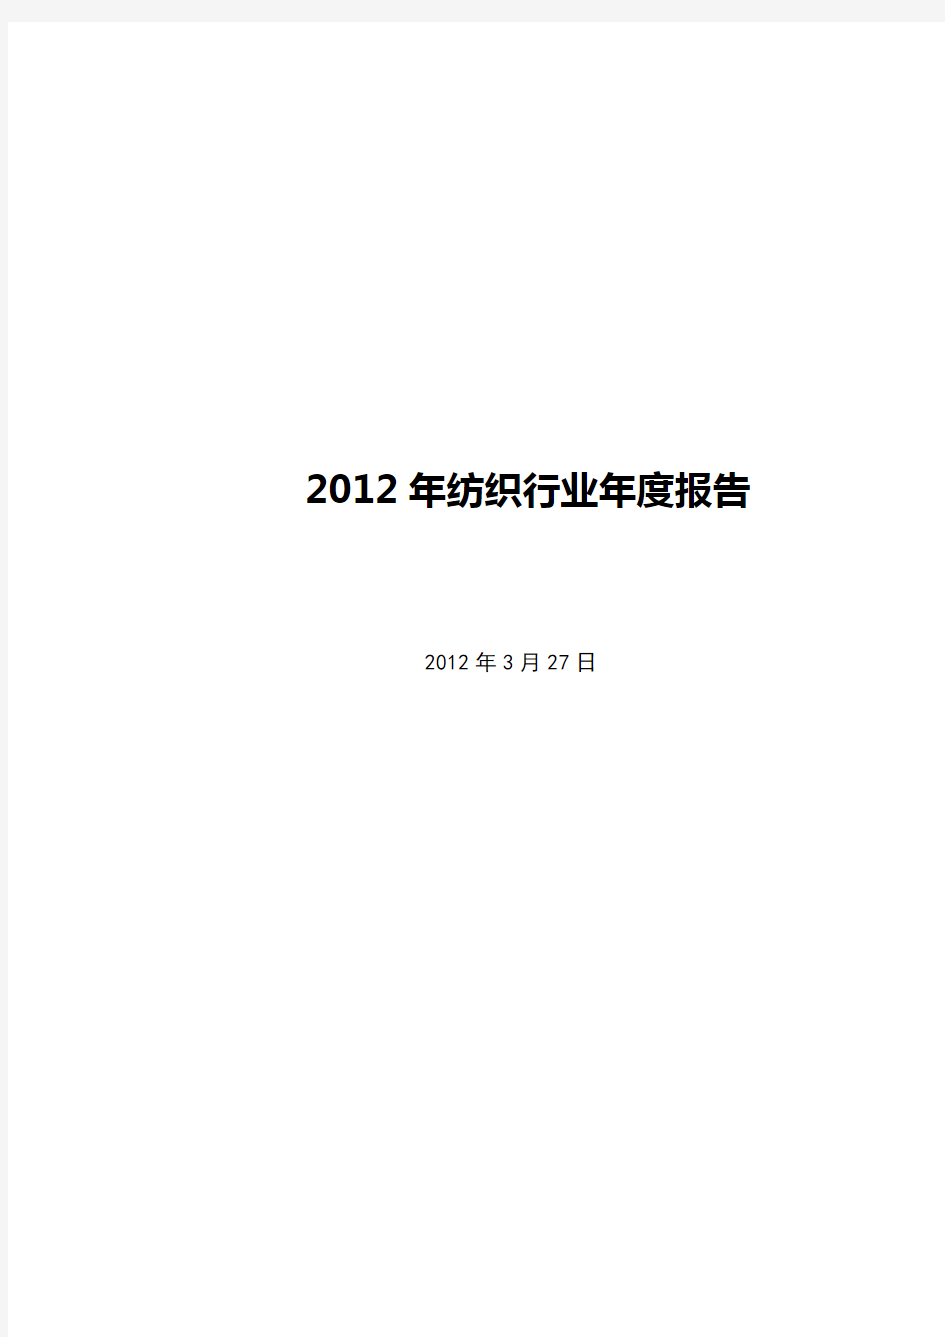 2012年纺织行业年度报告